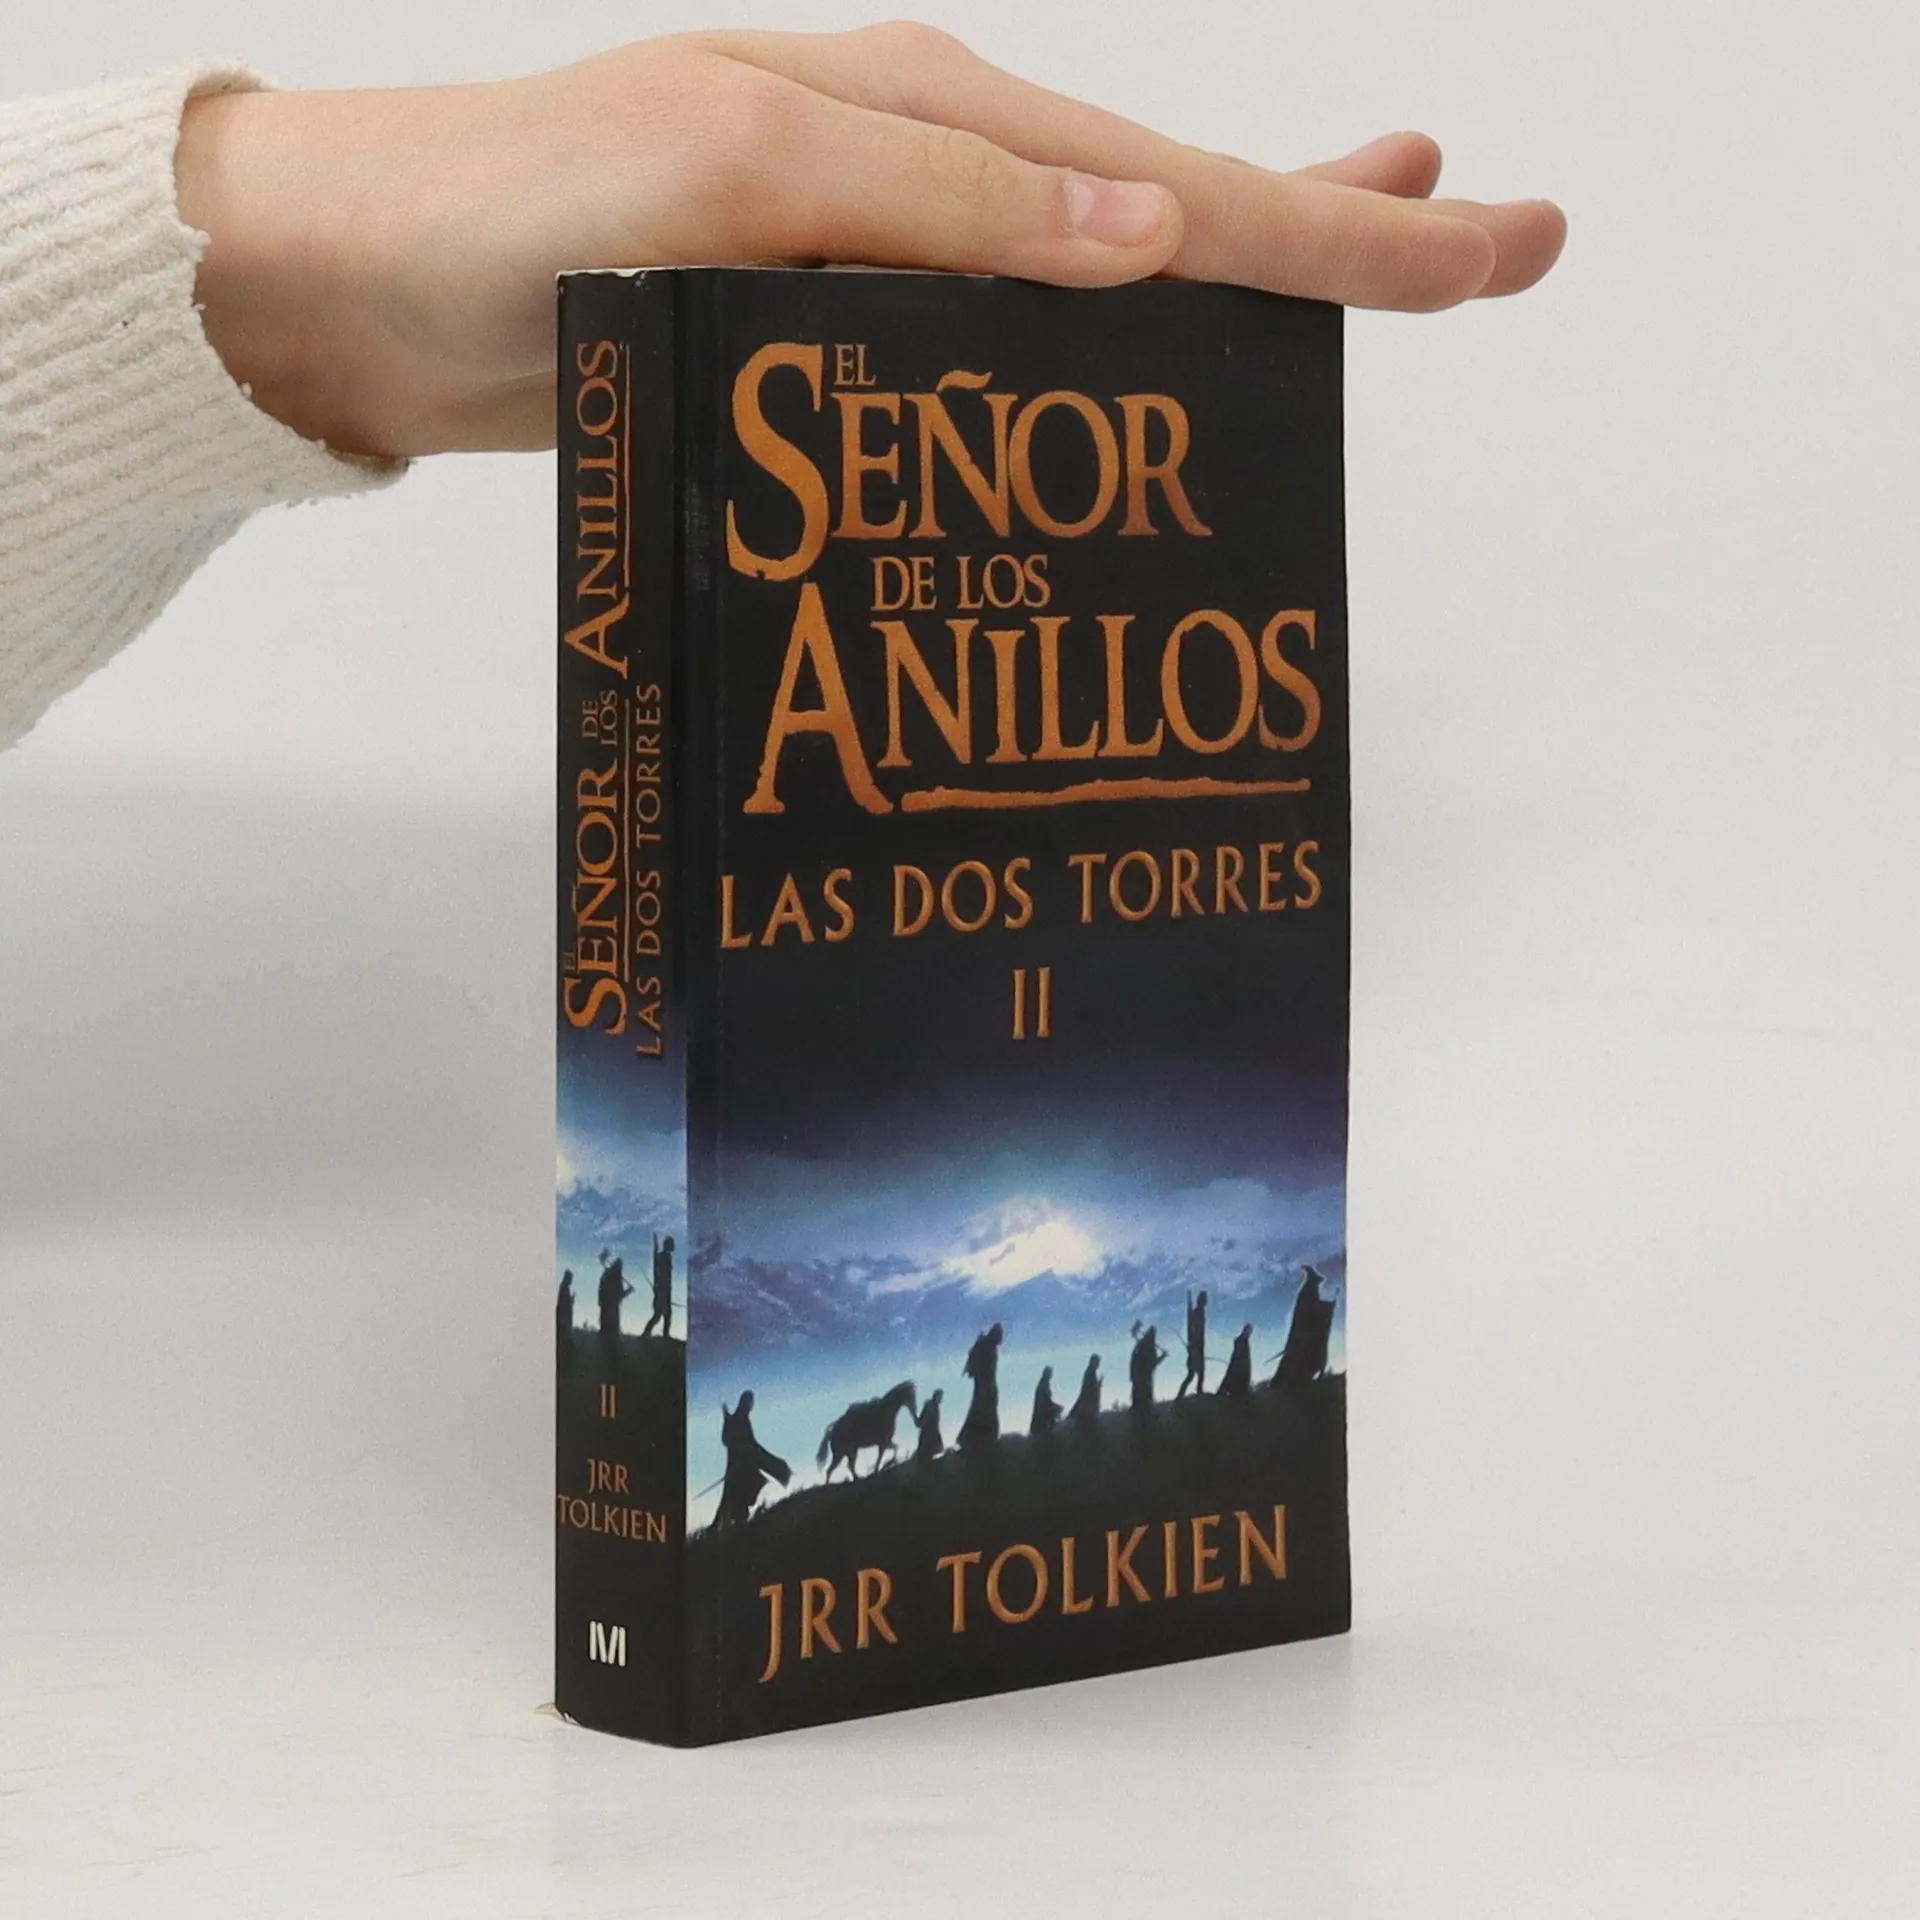 El Señor de los Anillos 2. Las Dos Torres - J. R. R. Tolkien